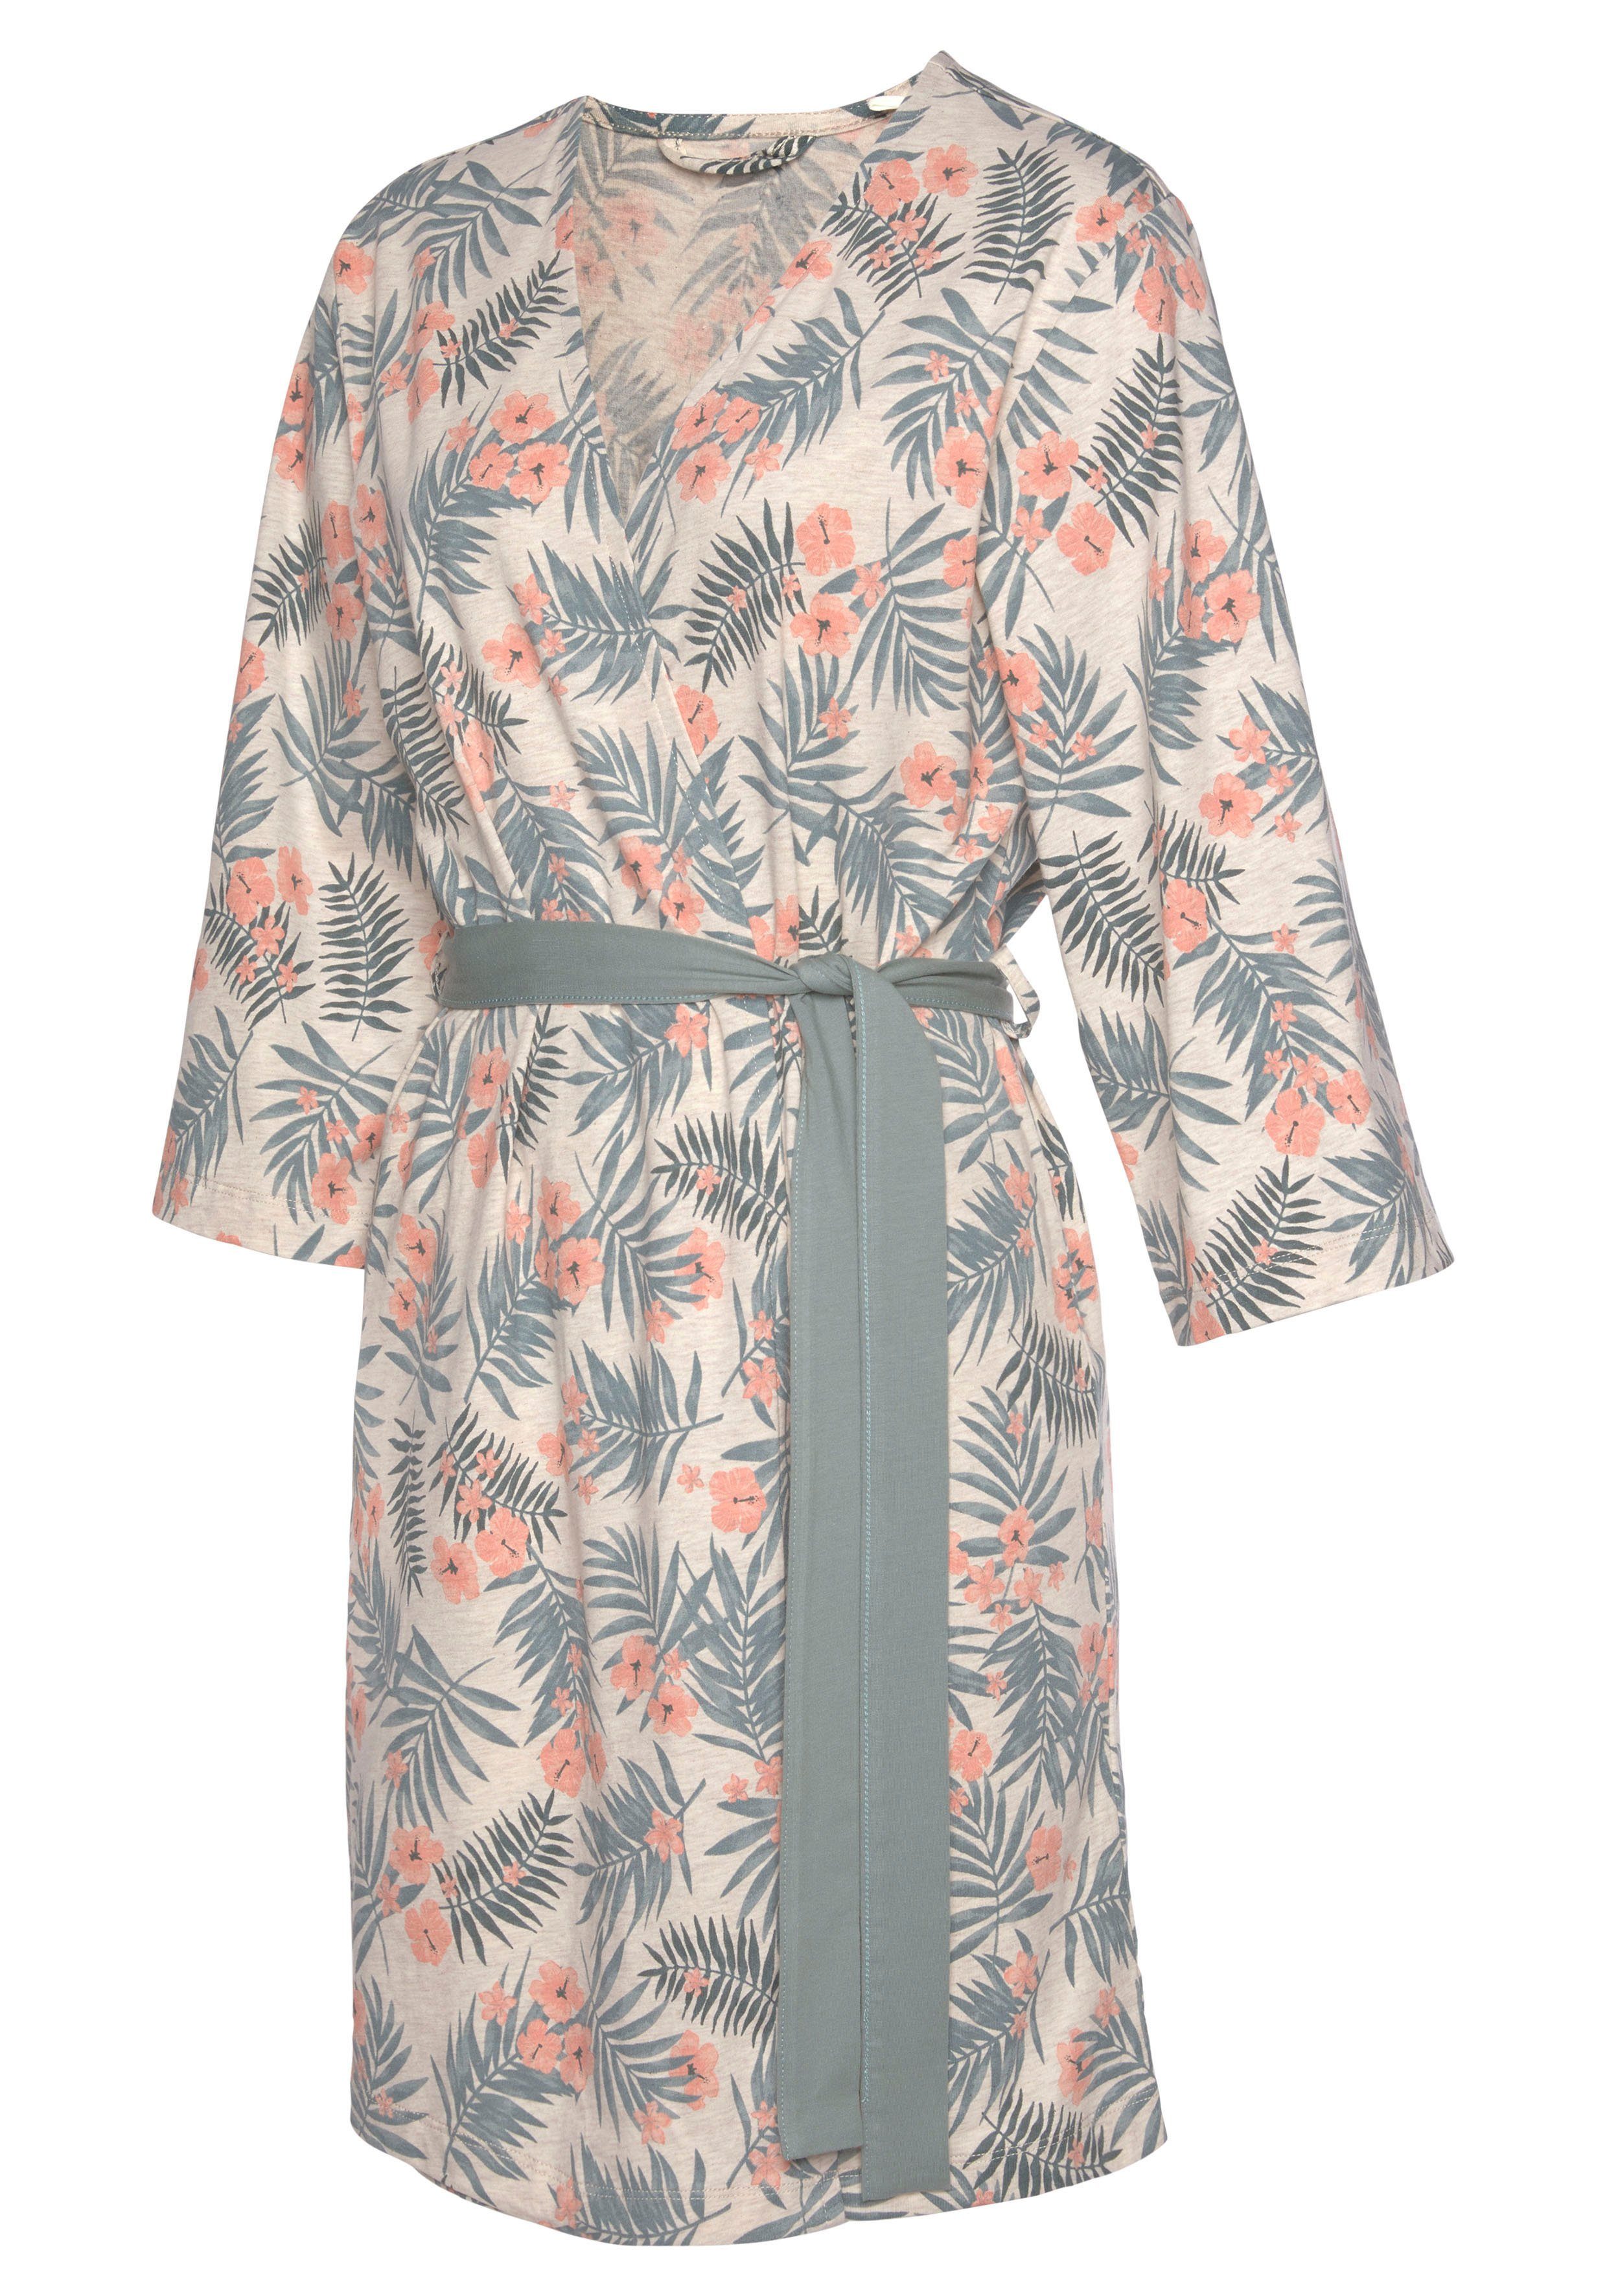 Kurzform, Kimono, Gürtel, sand-grün in und Allover-Druck uni LASCANA Baumwolle,